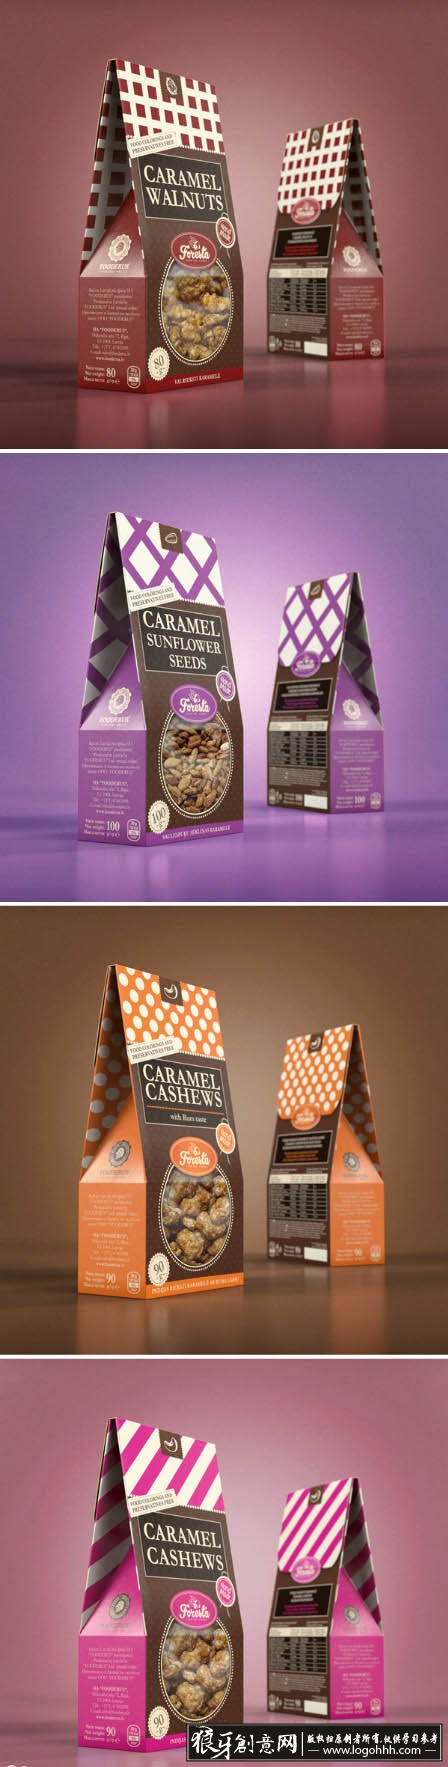 包装设计灵感 创意零食小食品包装设计灵感 …-堆糖